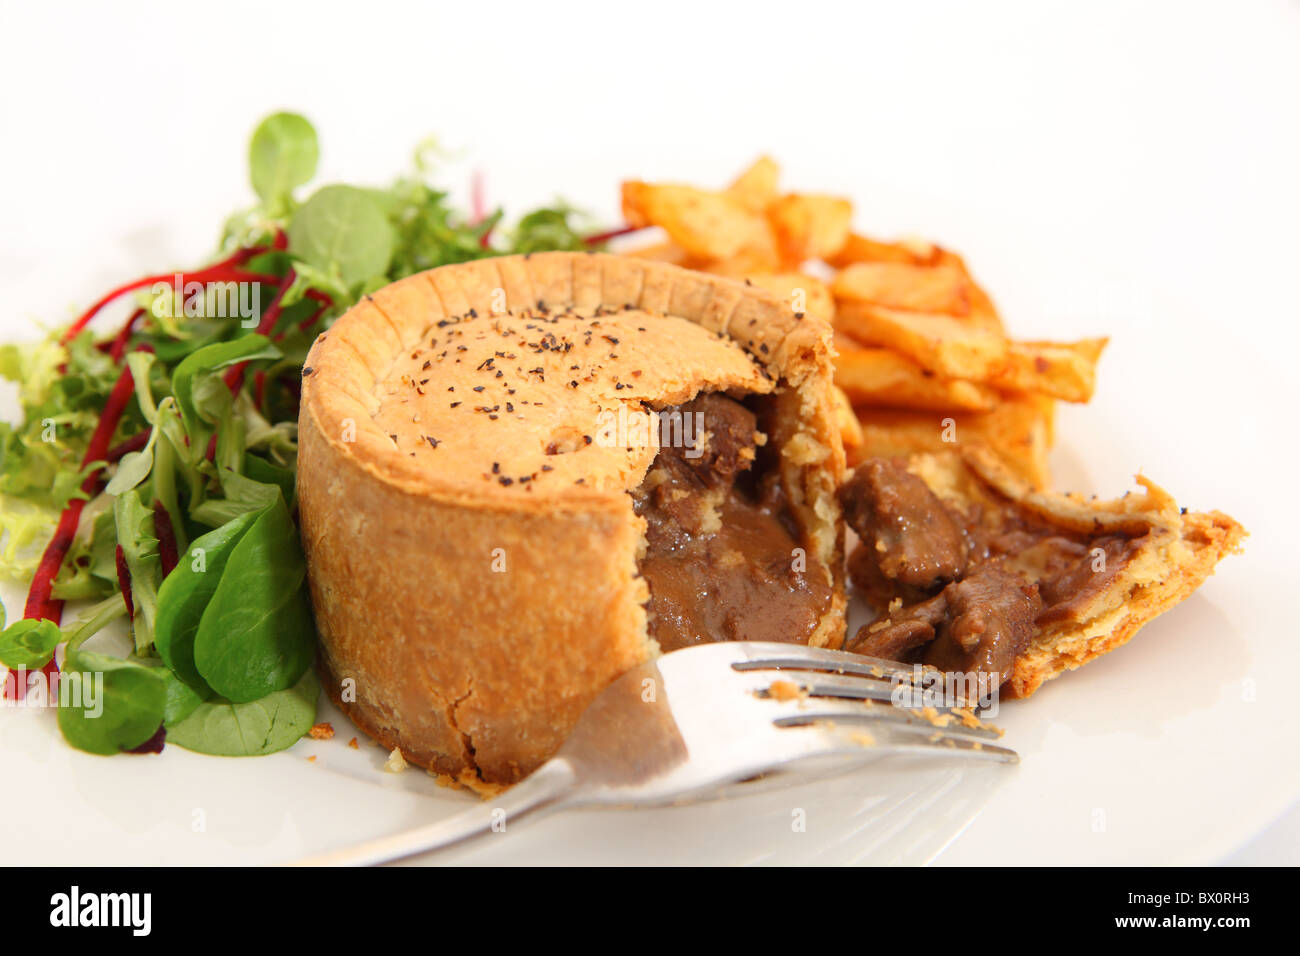 Ein erhöhter Steak Pie, mit französischen gebratenen Kartoffel-Chips und einem grünen Salat serviert. Stockfoto